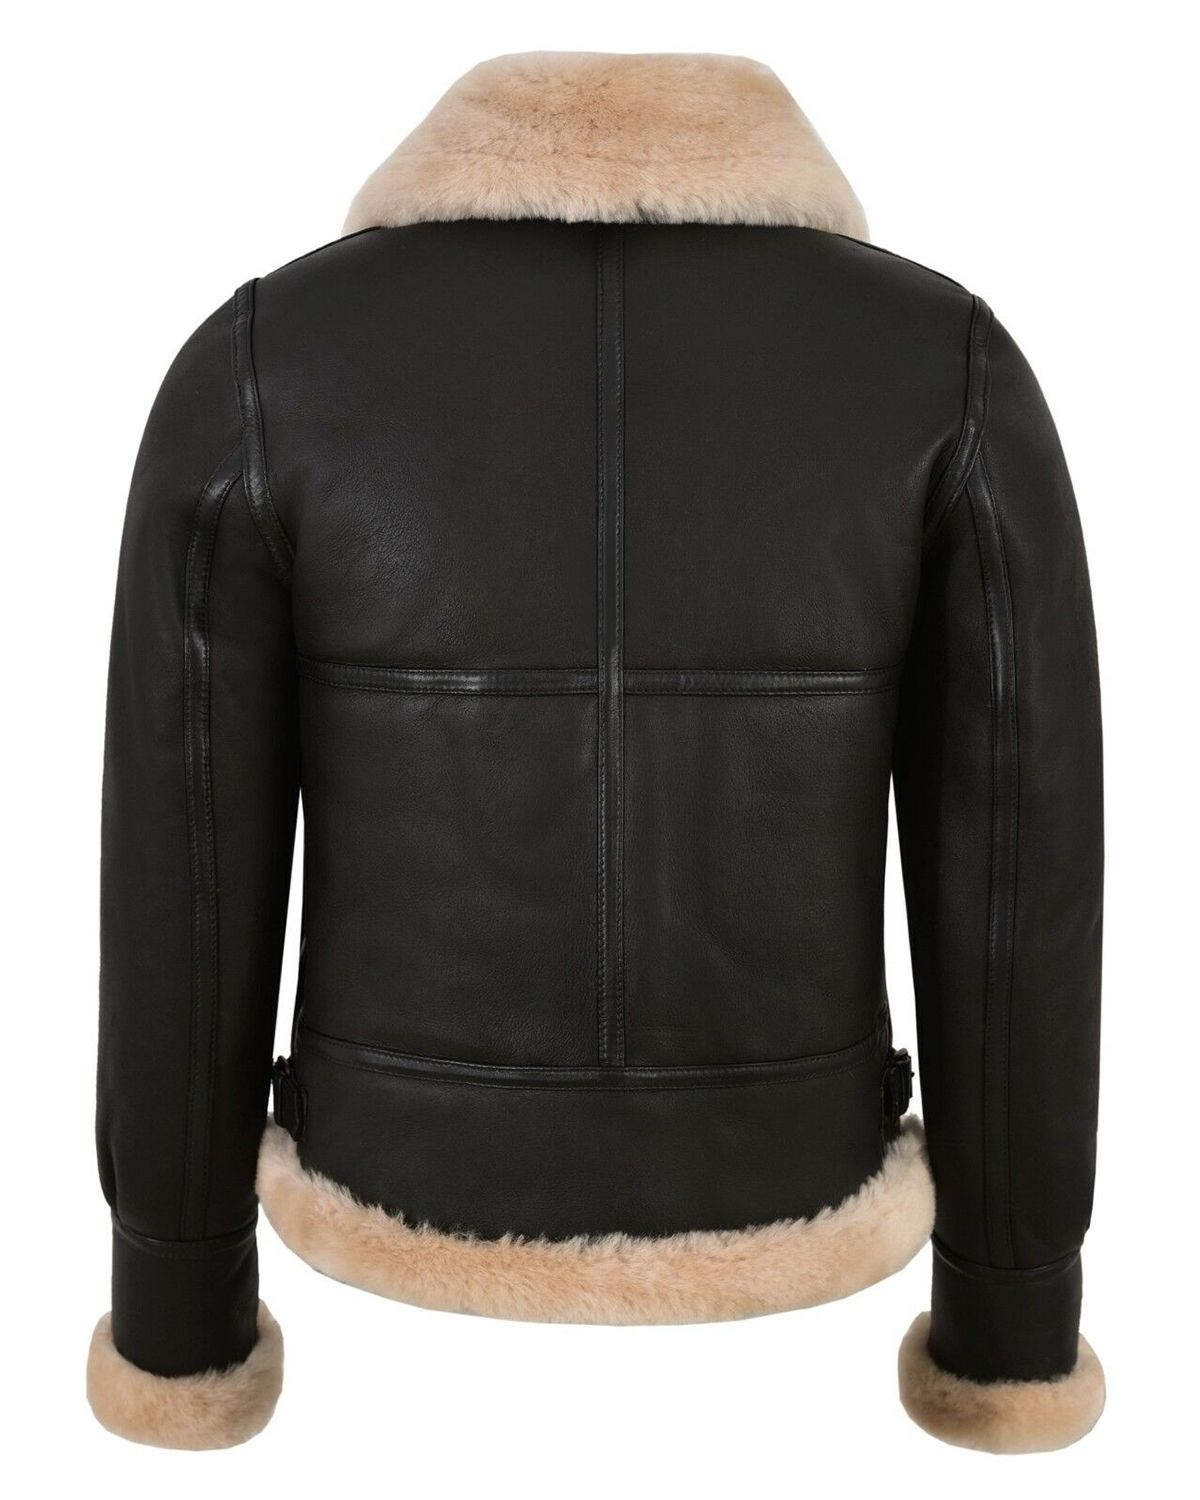 women winter jacket warm winter leather jacket genuine leather jacket women shearling jacket for women black leather jacket men winter aviator jacket women